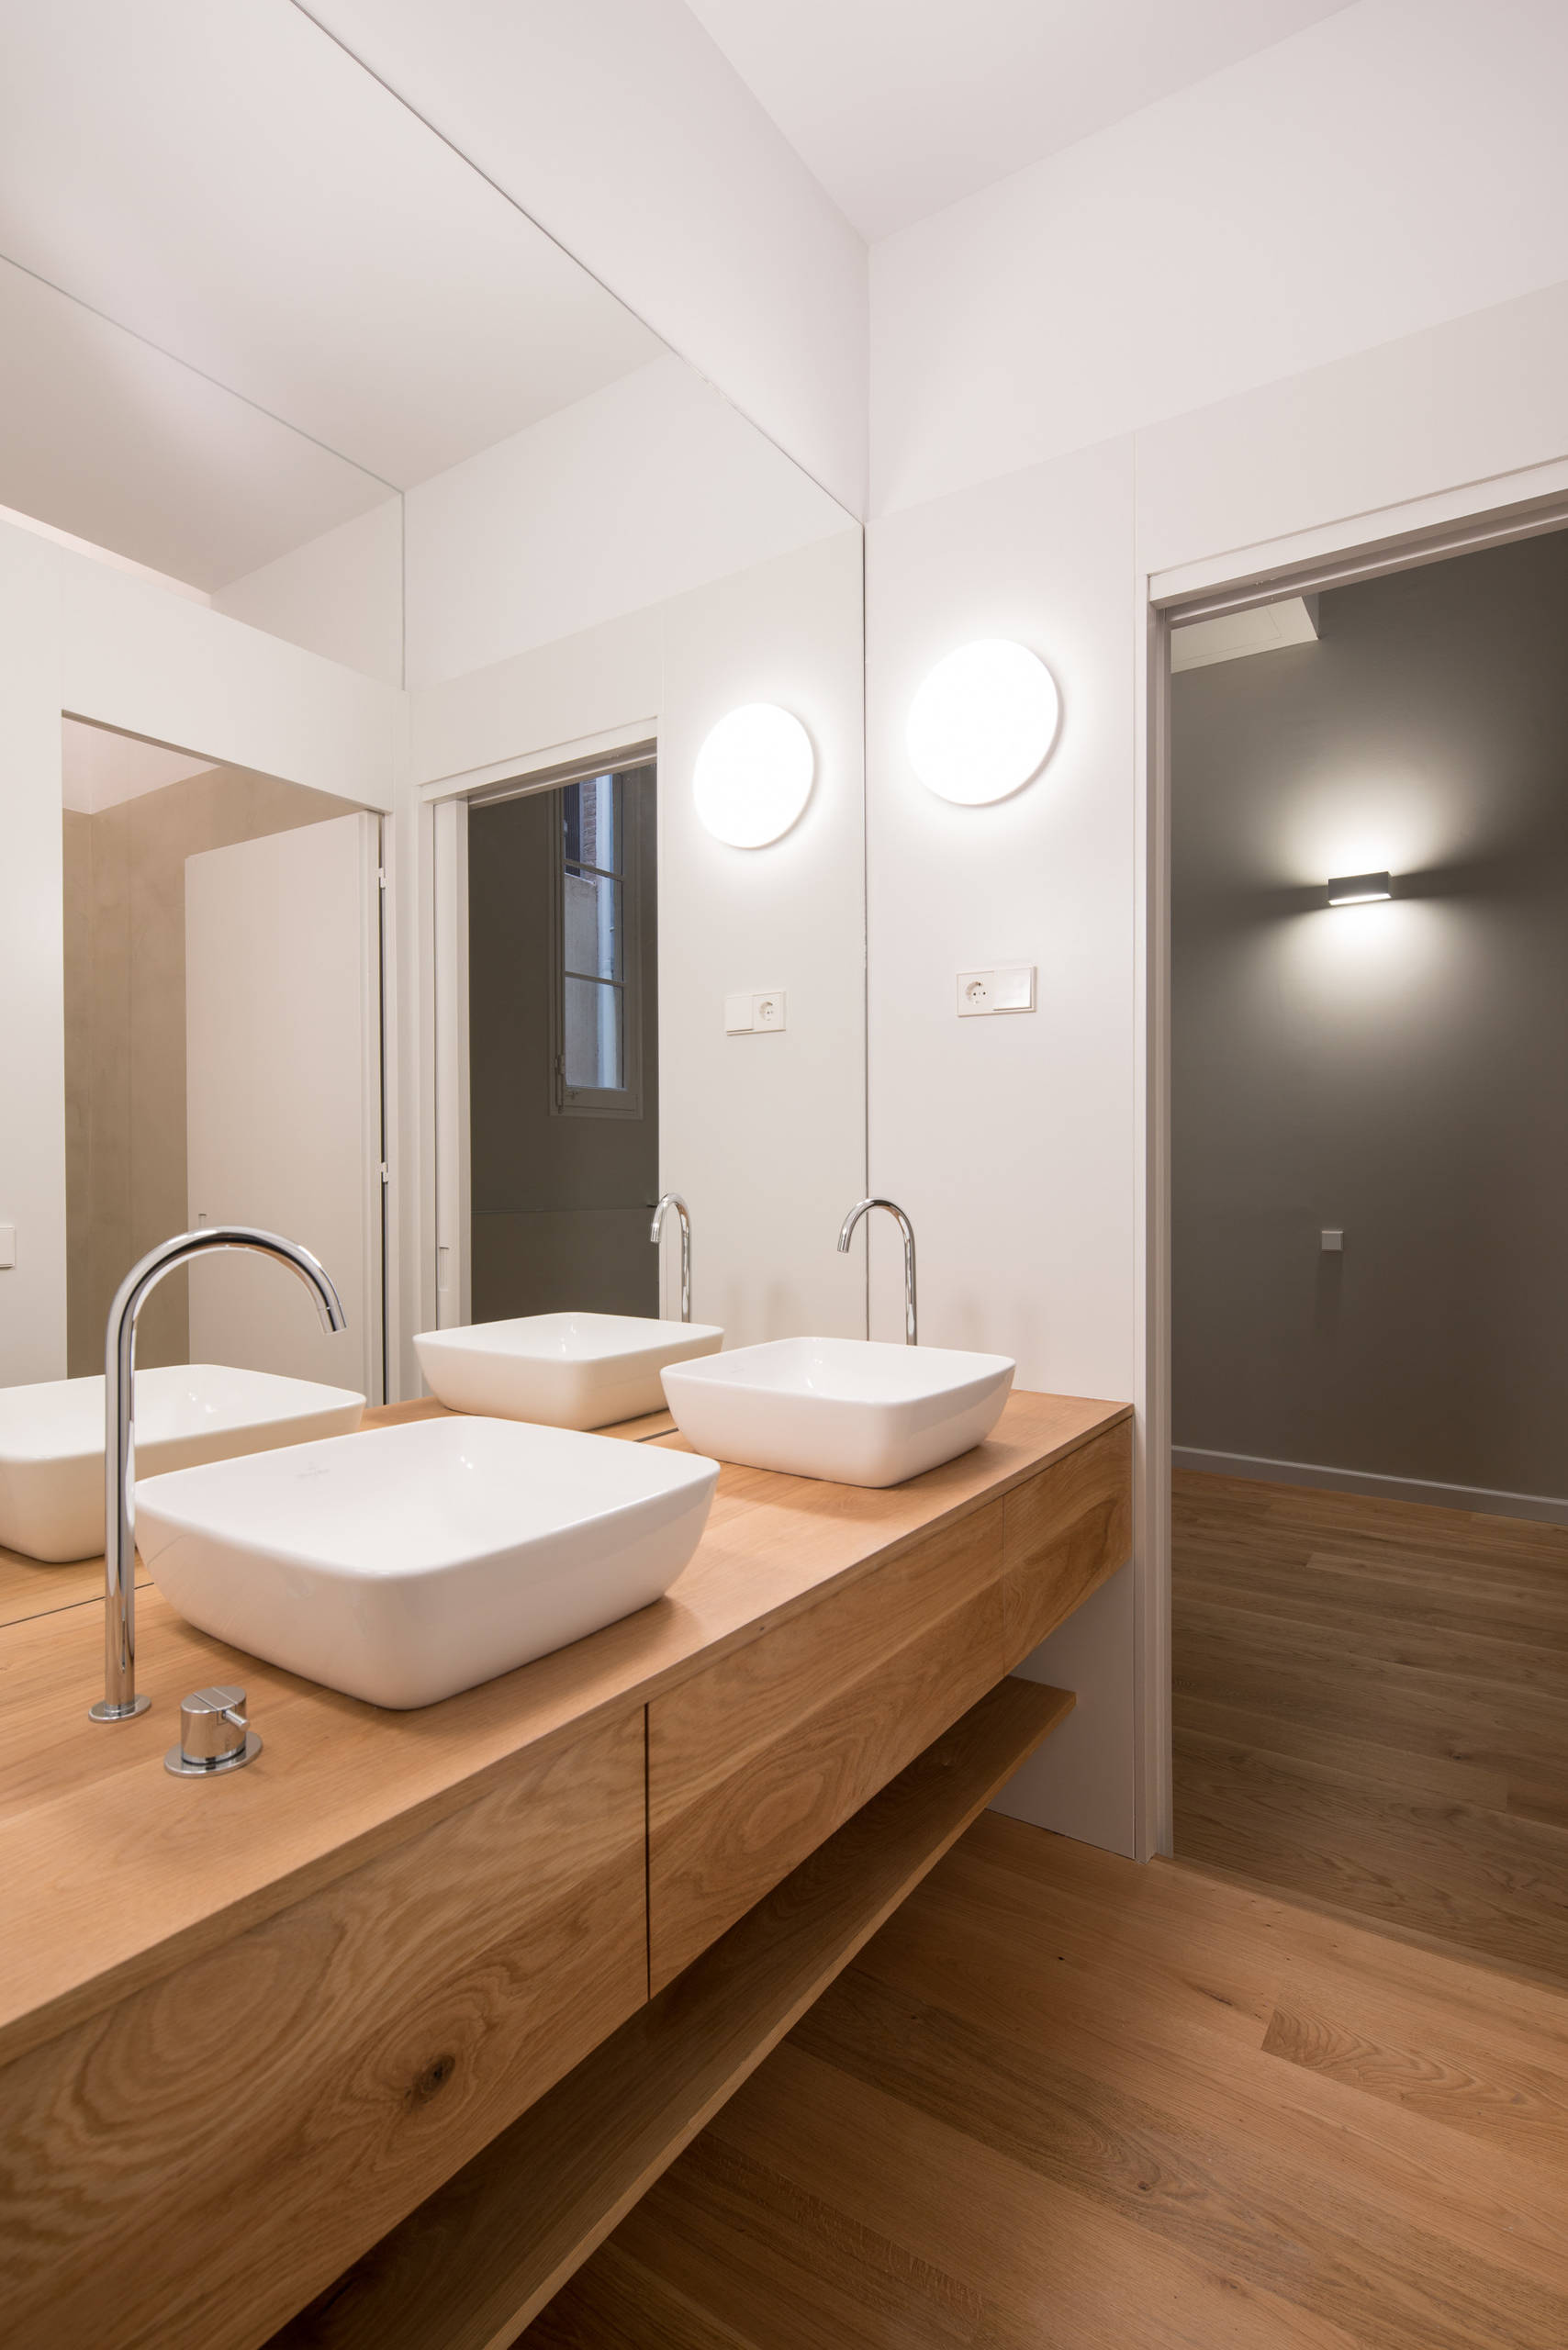 Baño y lavadero juntos – Ideas para decorar diseños residenciales